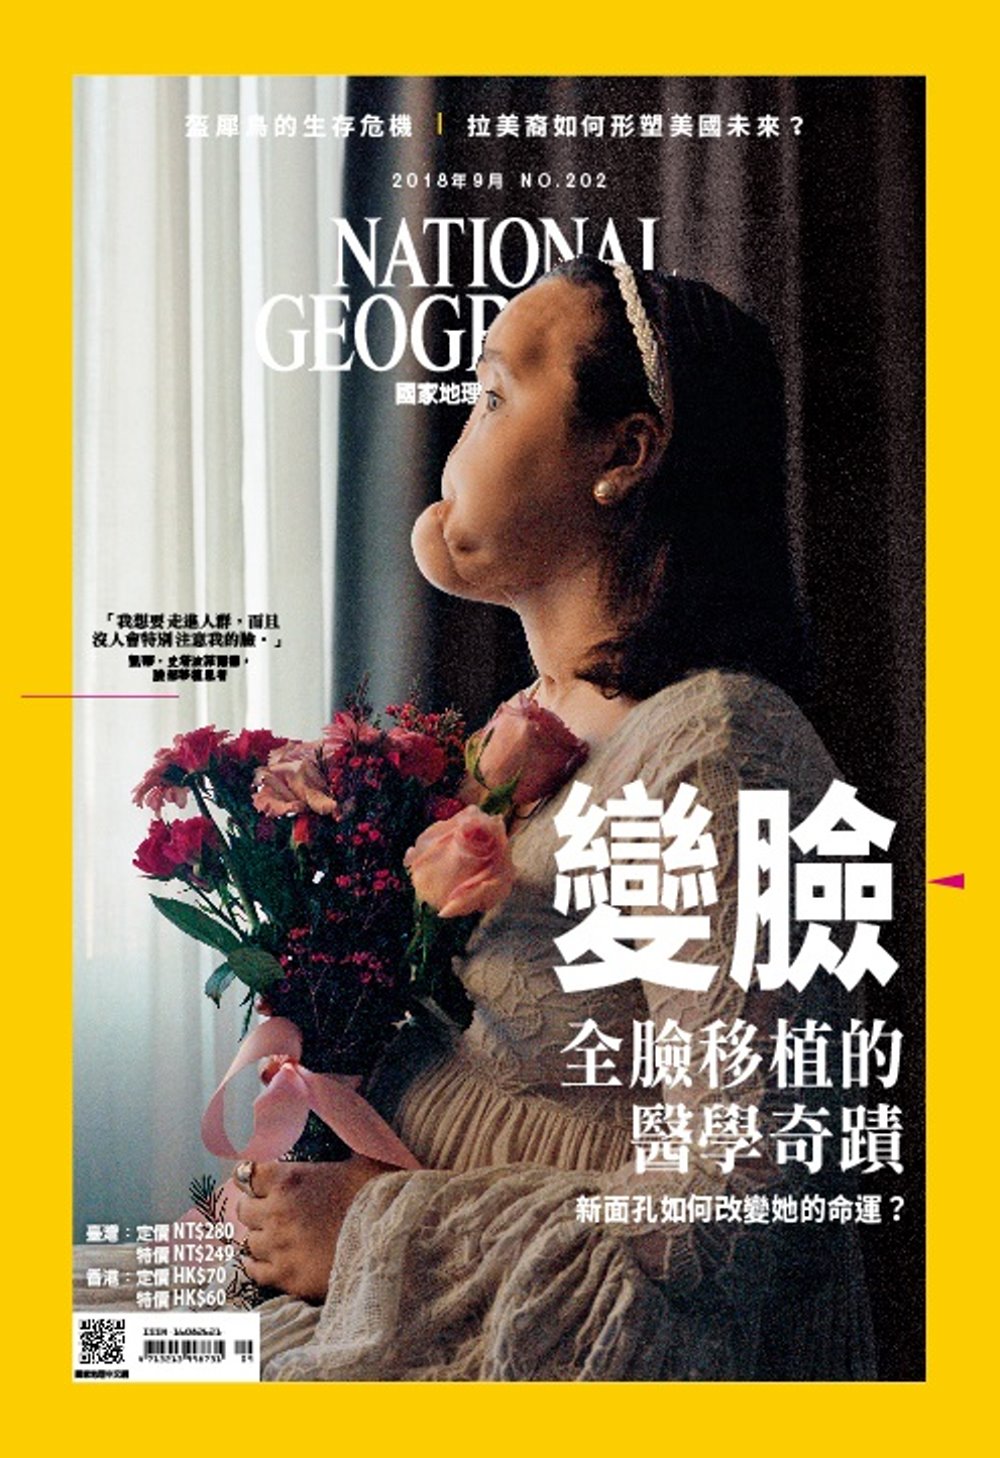 家地理雜誌中文版 9月號/2018 第202期